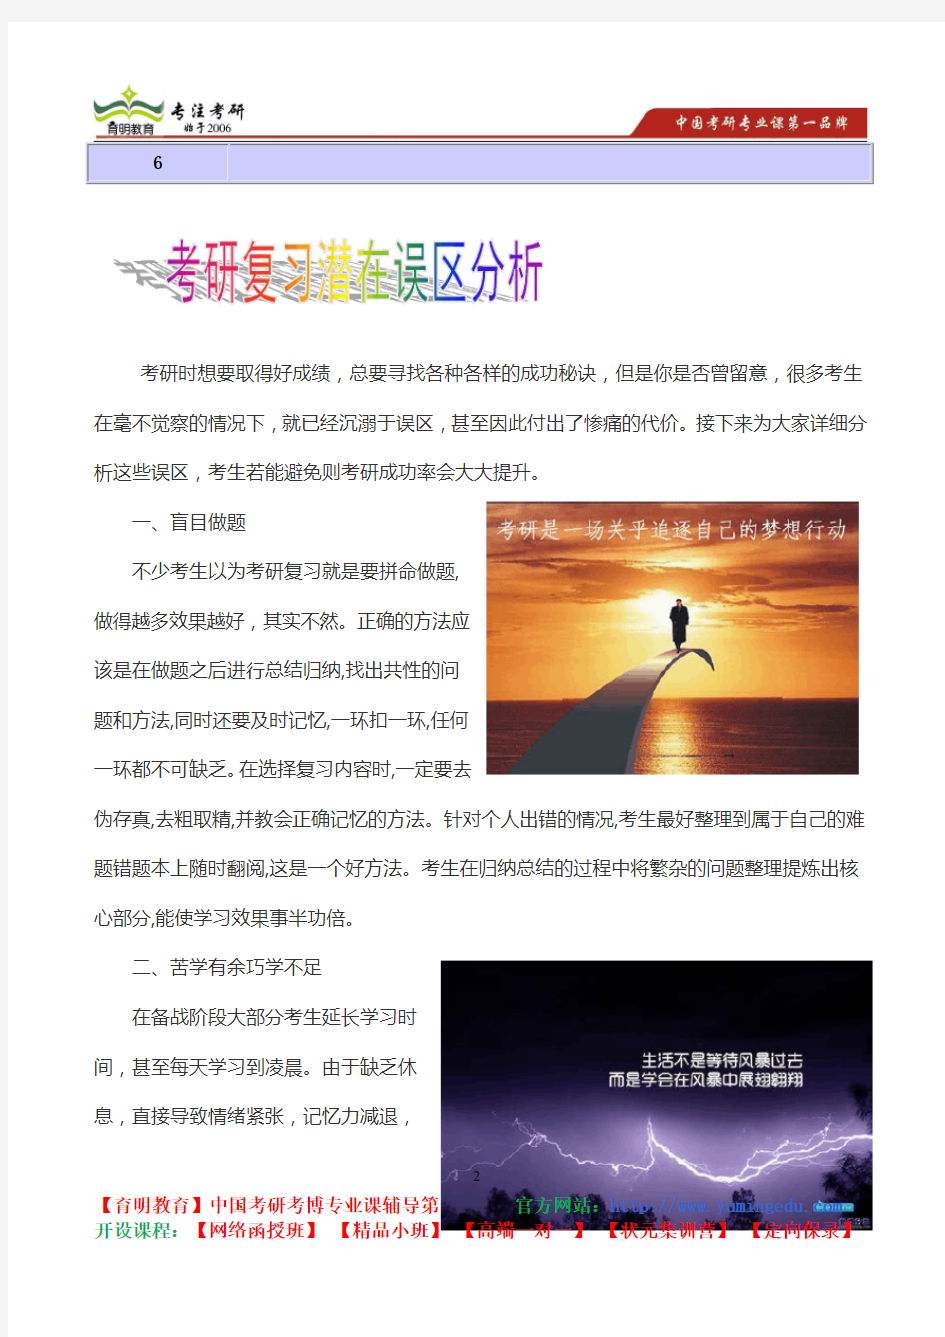 2015年北京大学汉语言文字真题解析,考研心态,考研真题,考研经验